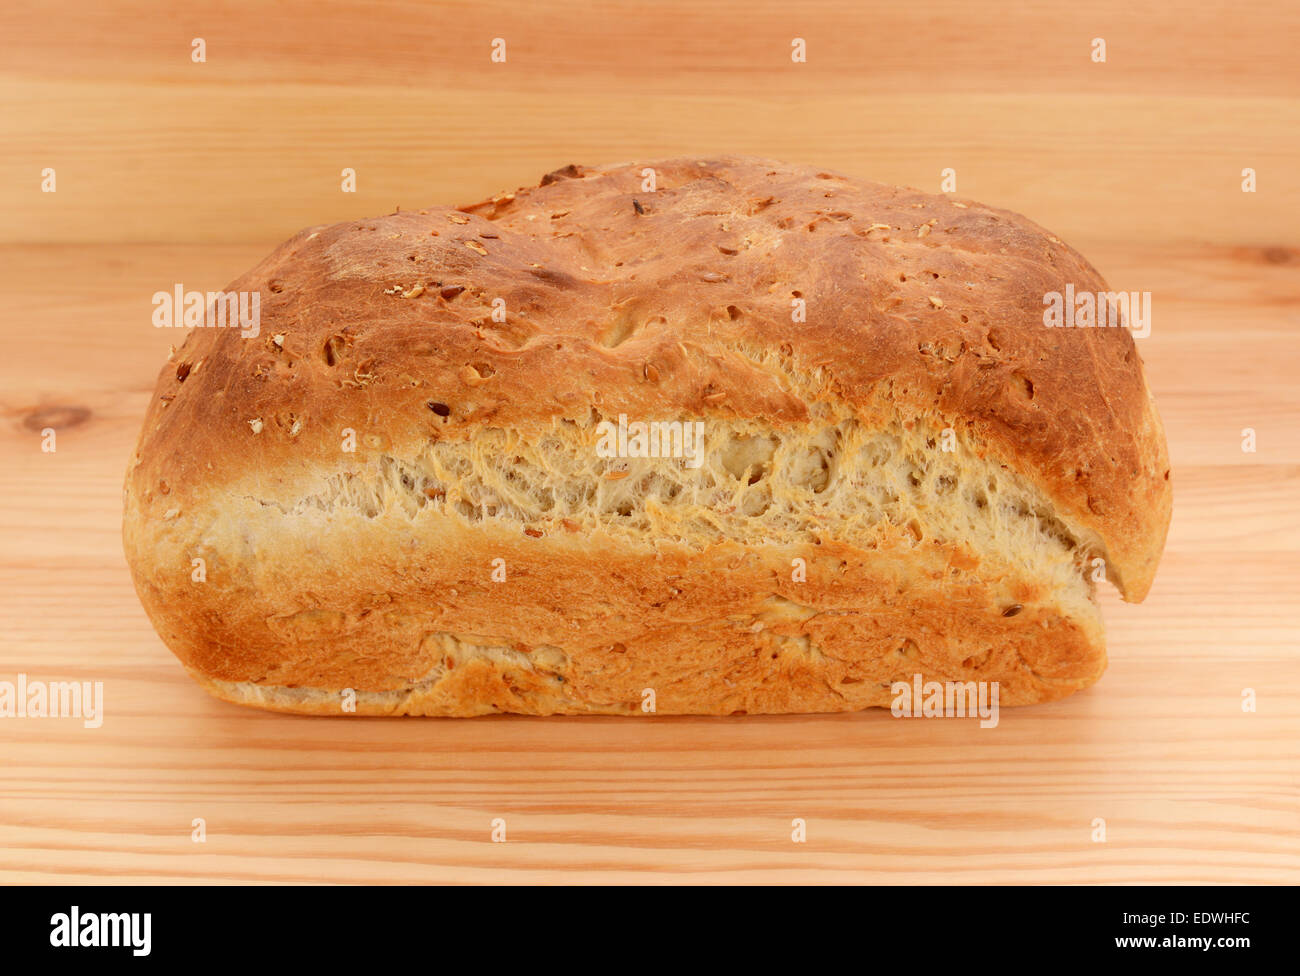 Почему у хлеба корочка. Корка хлеба. Хлеб с разрывами. Верхняя корочка хлеба. Отрыв верхней корки хлеба.